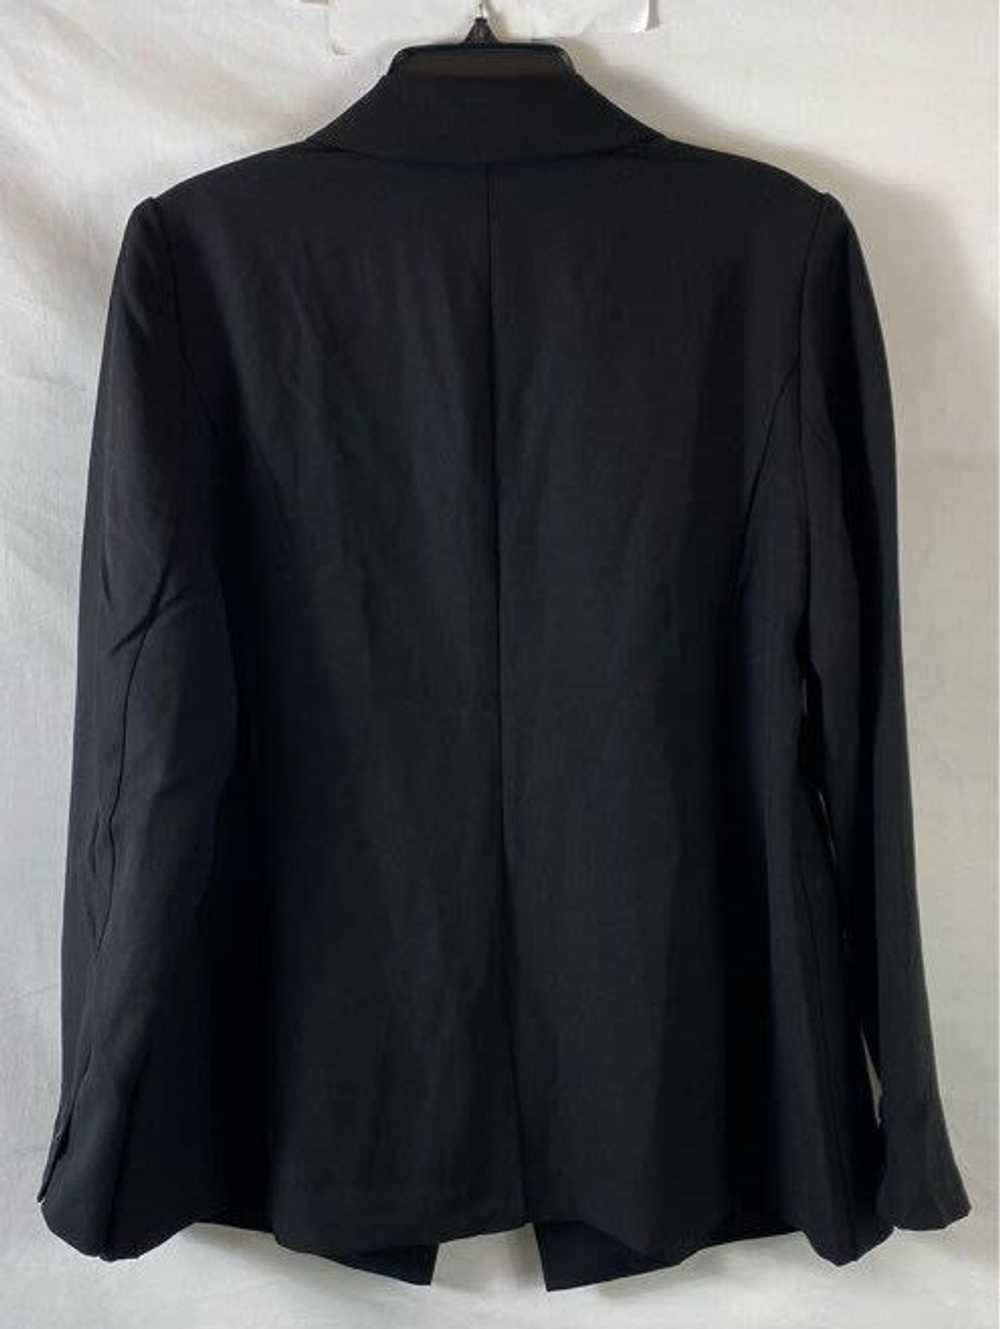 Lane Bryant Black Jacket - Size X Small - image 2